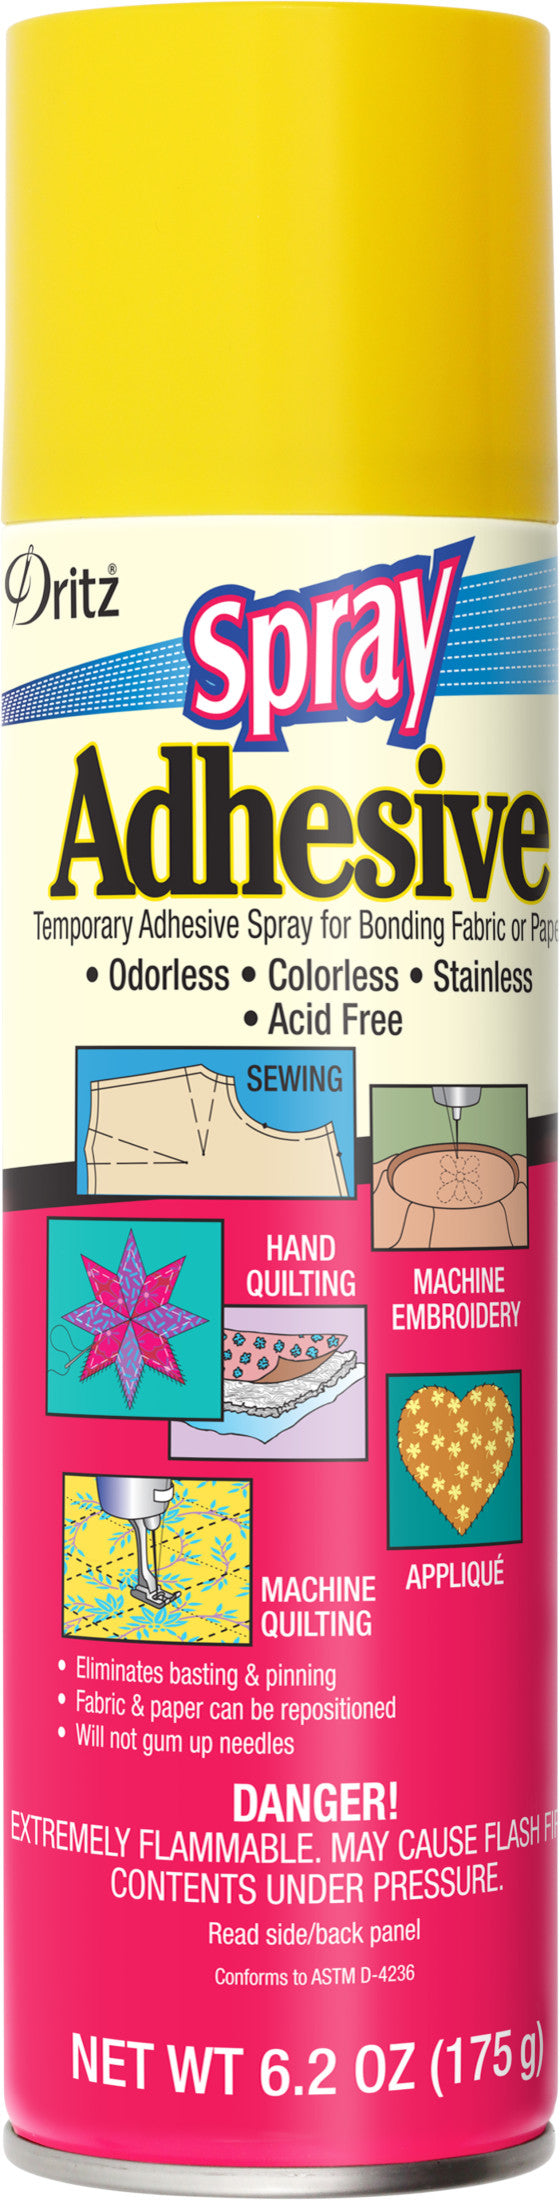 Spray N Bond Basting Adhesive